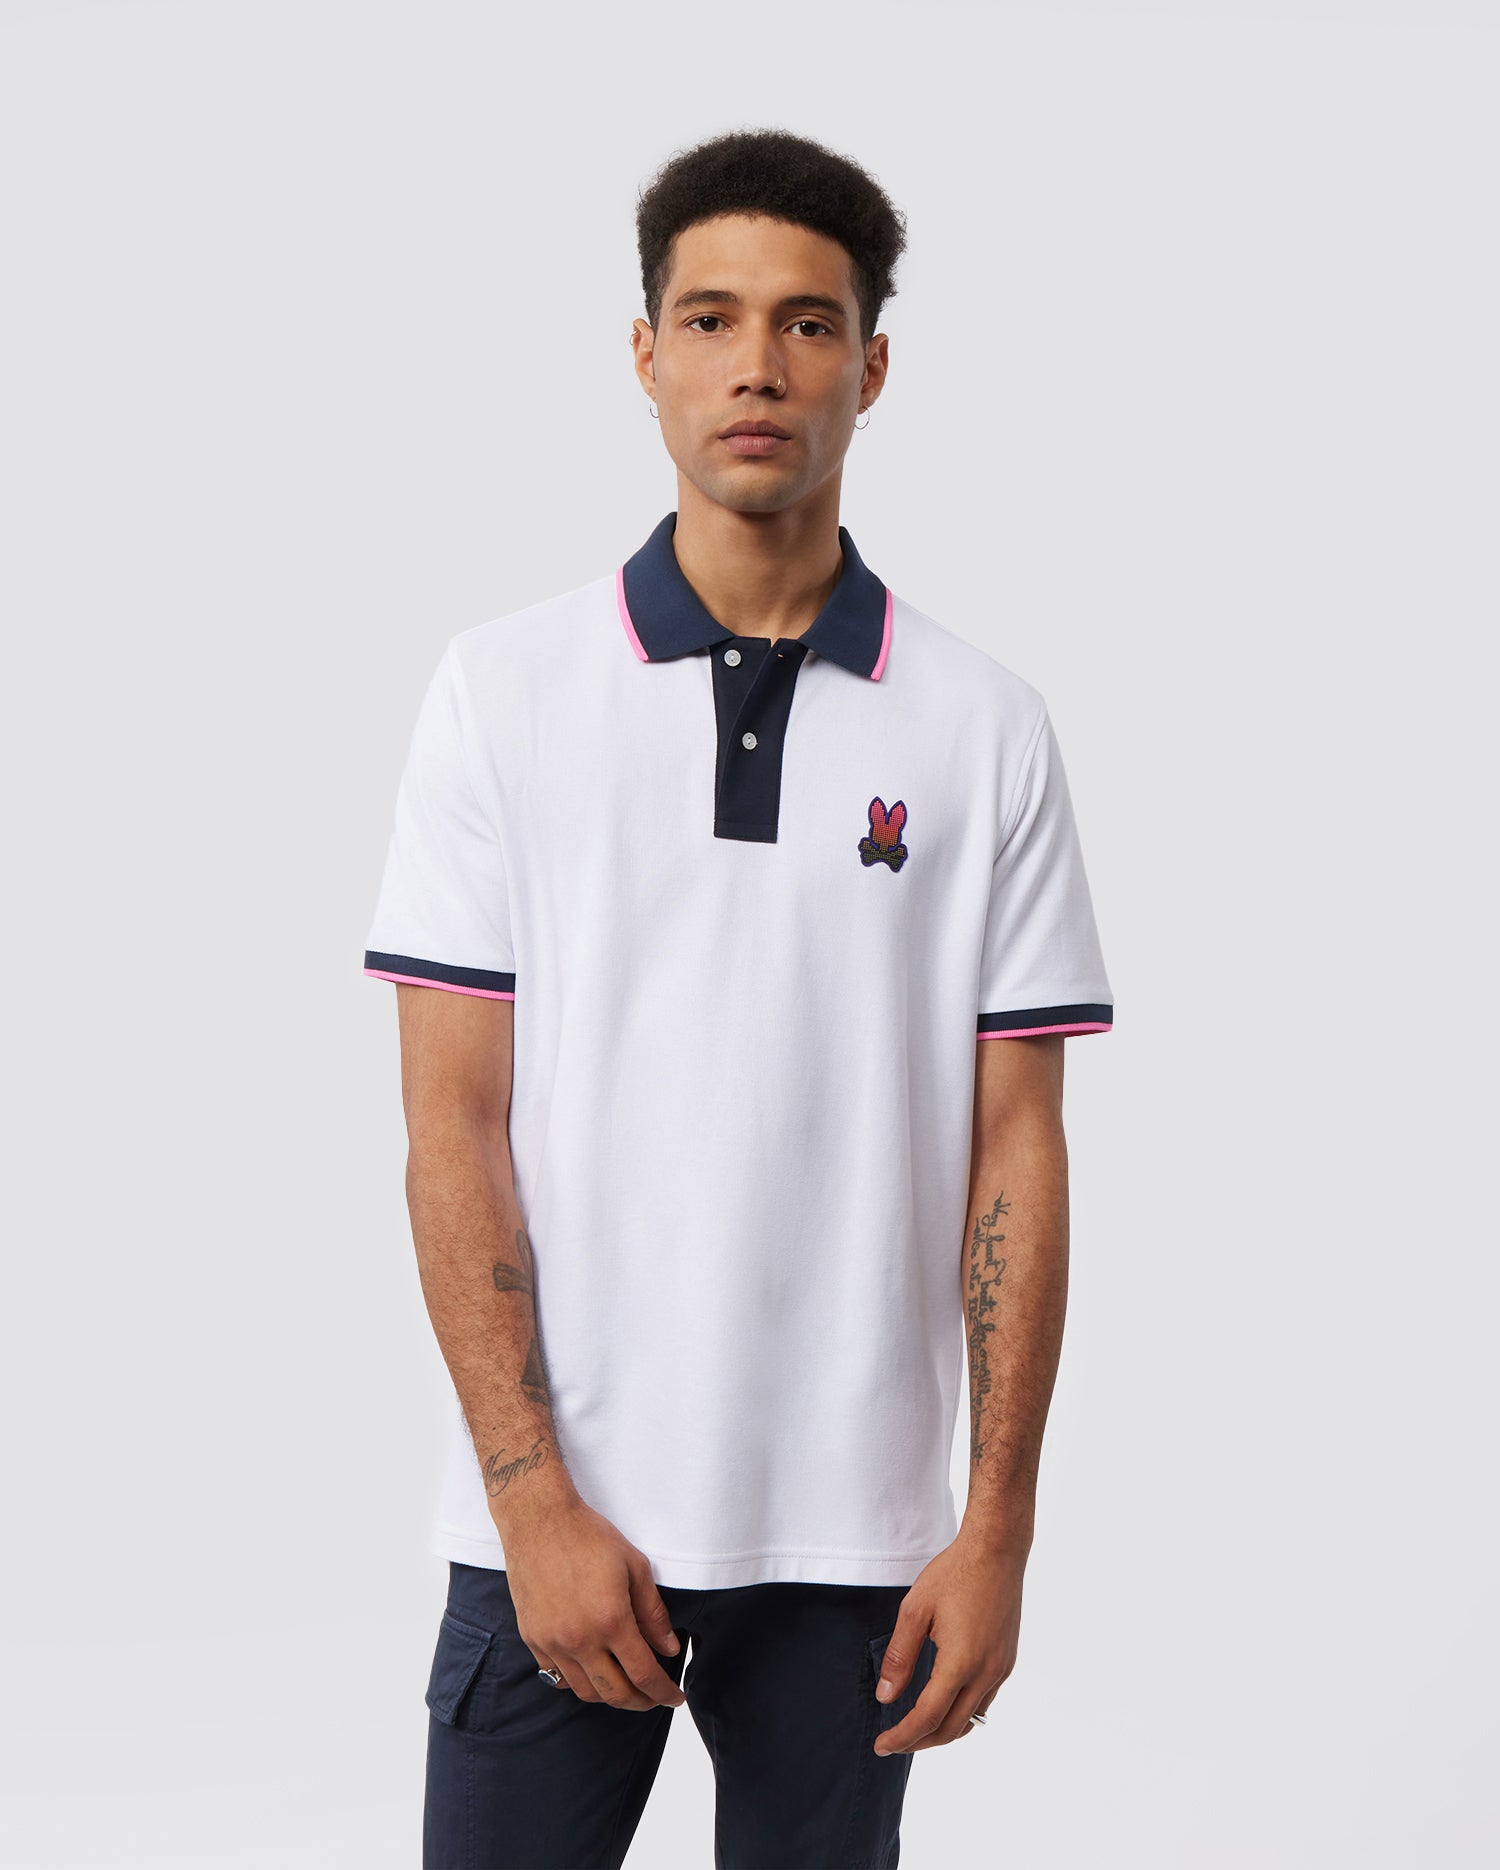 Casa Moda, Polo Pique Fan-Shirt, Mit Zipper + Rücken-Nummer, Farbe weiß